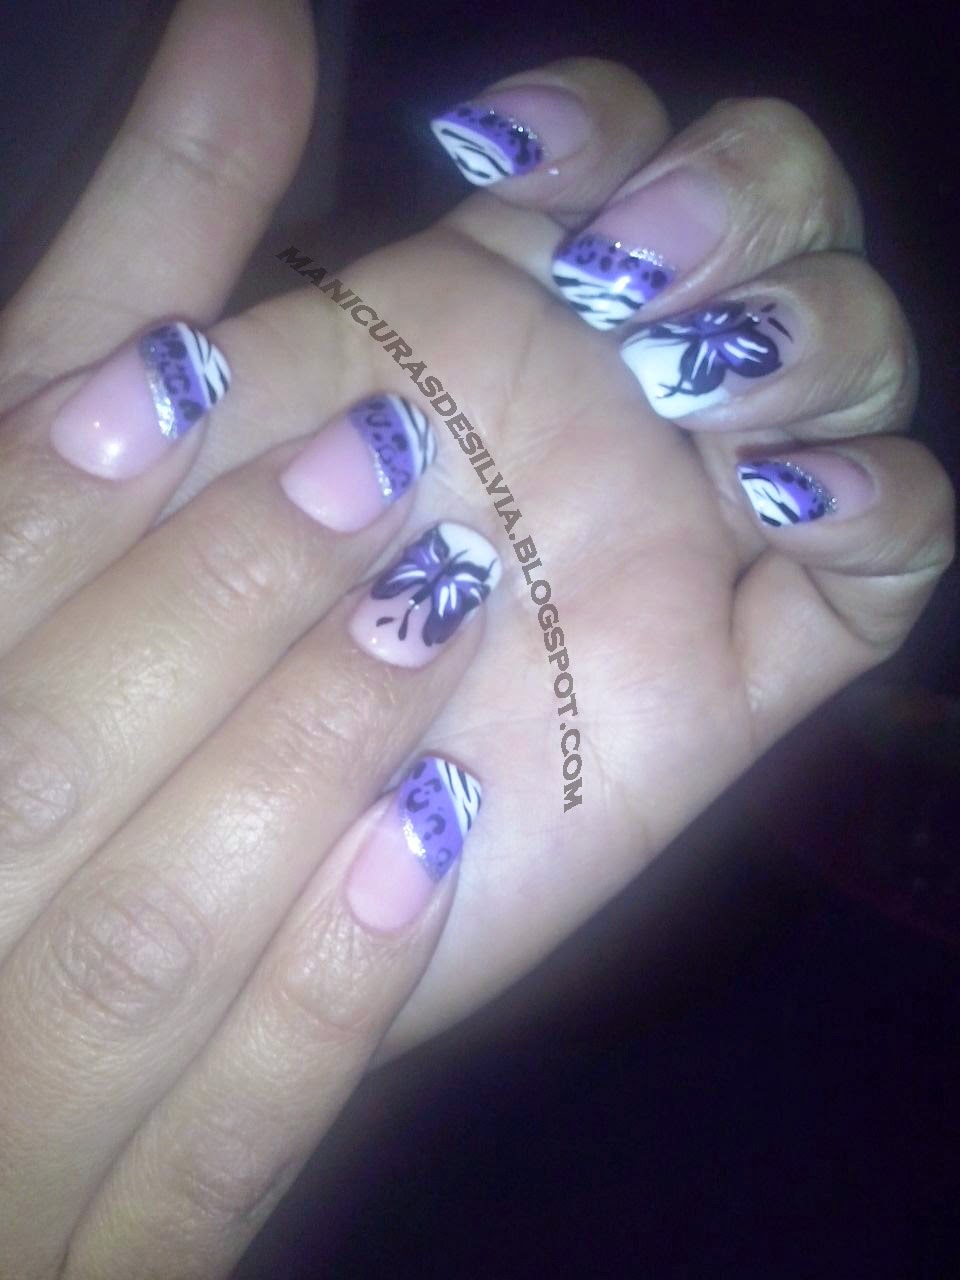 Diseño morado en uñas largas (Purple design on long nails)